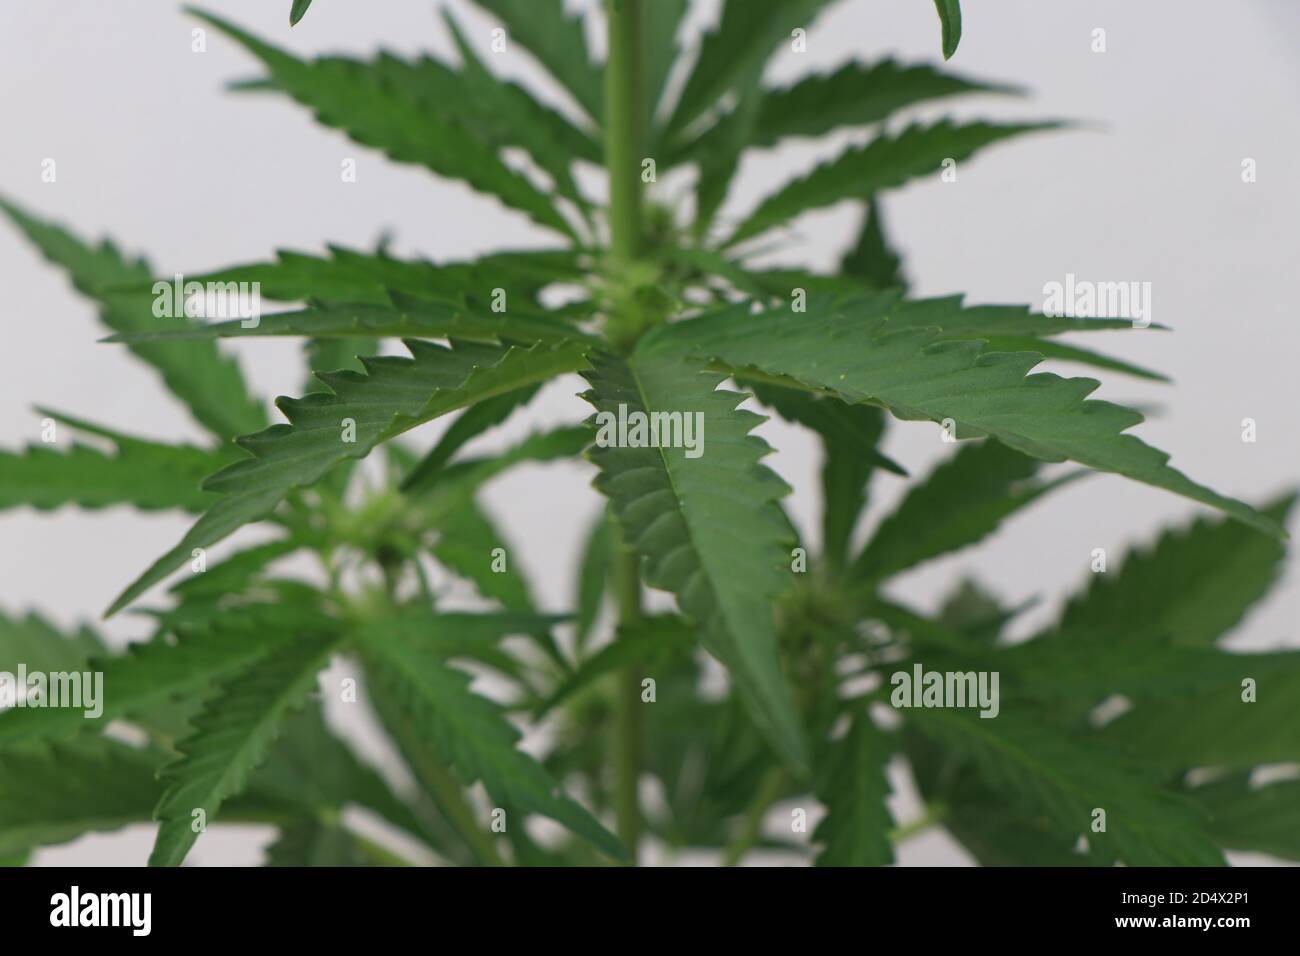 Un gros plan d'une plante verte de cannabis marijuana. Photo de haute qualité Banque D'Images